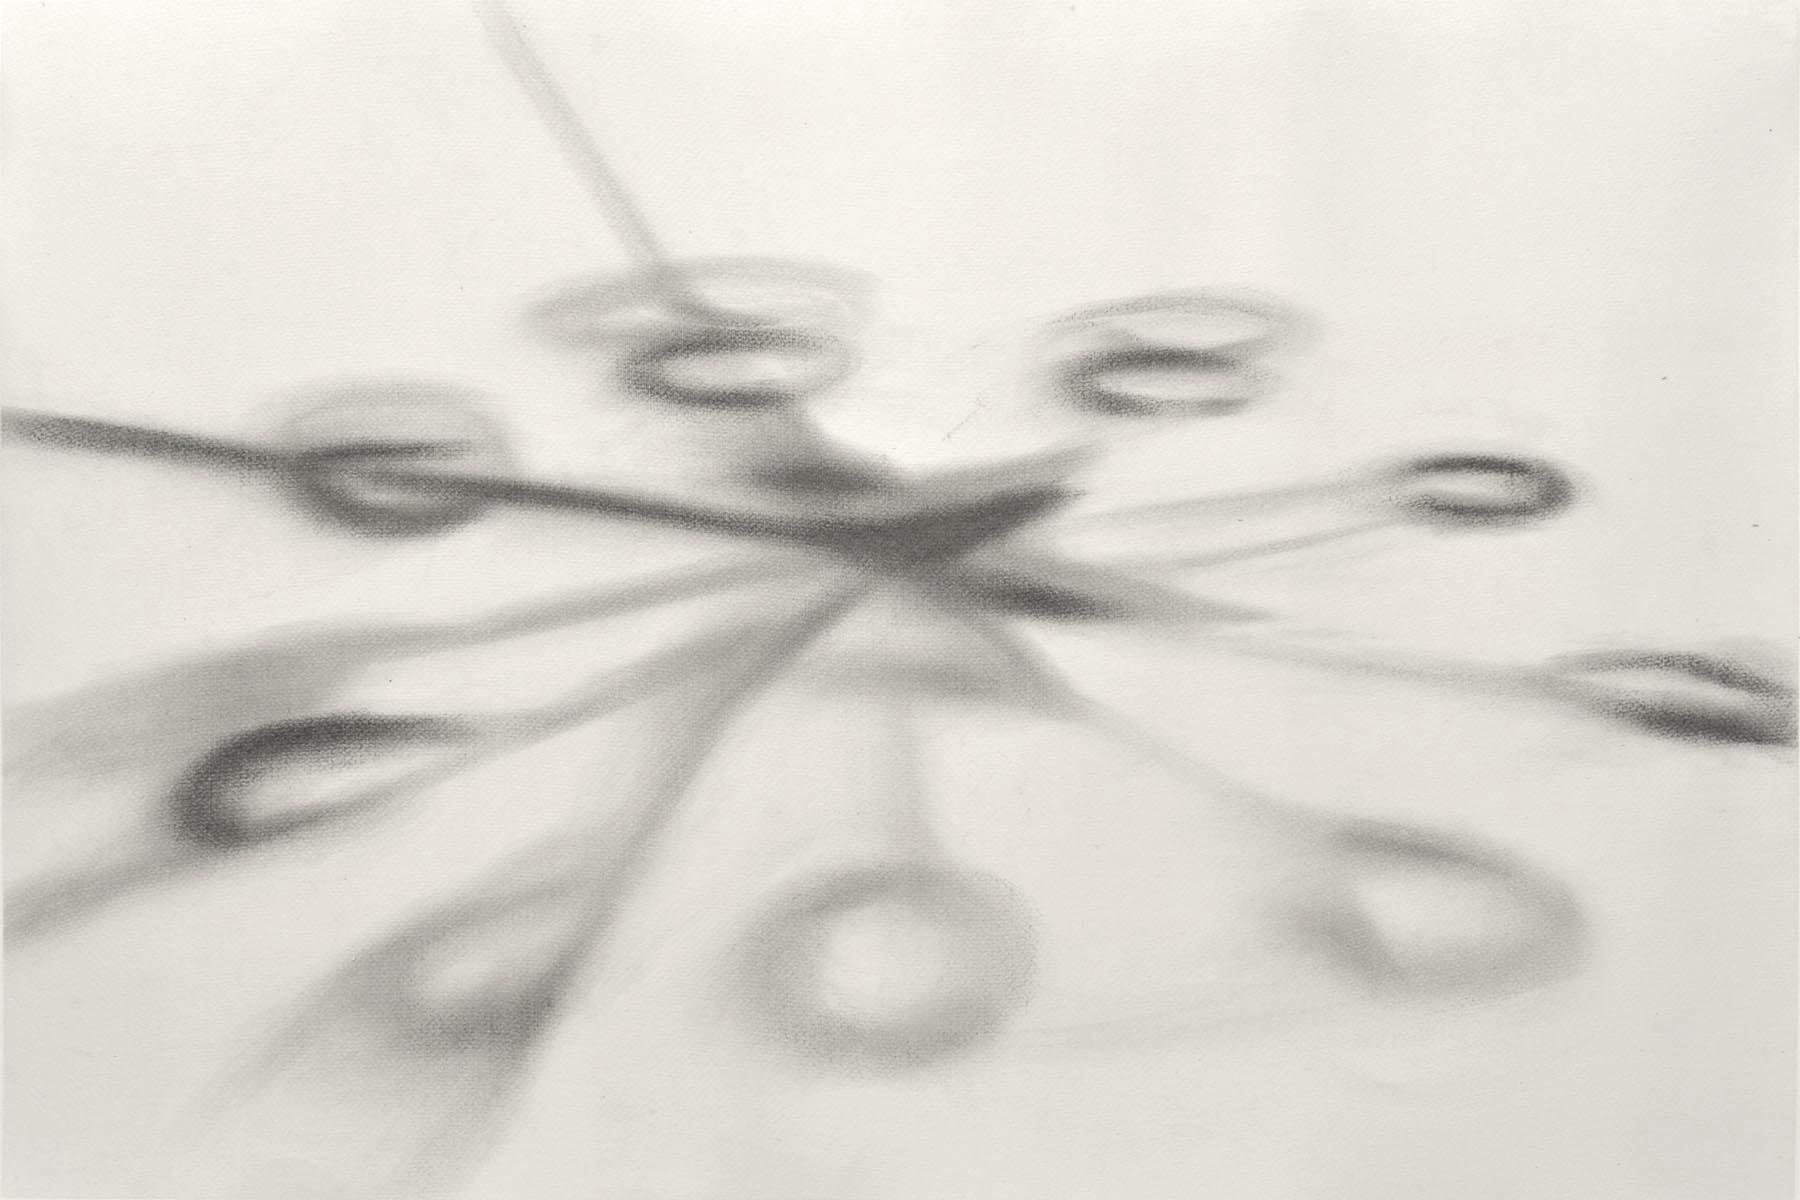 Antonio Marchetti Lamera, Raggi ombrosi, 2019, graphite on paper, 70 x 100 cm